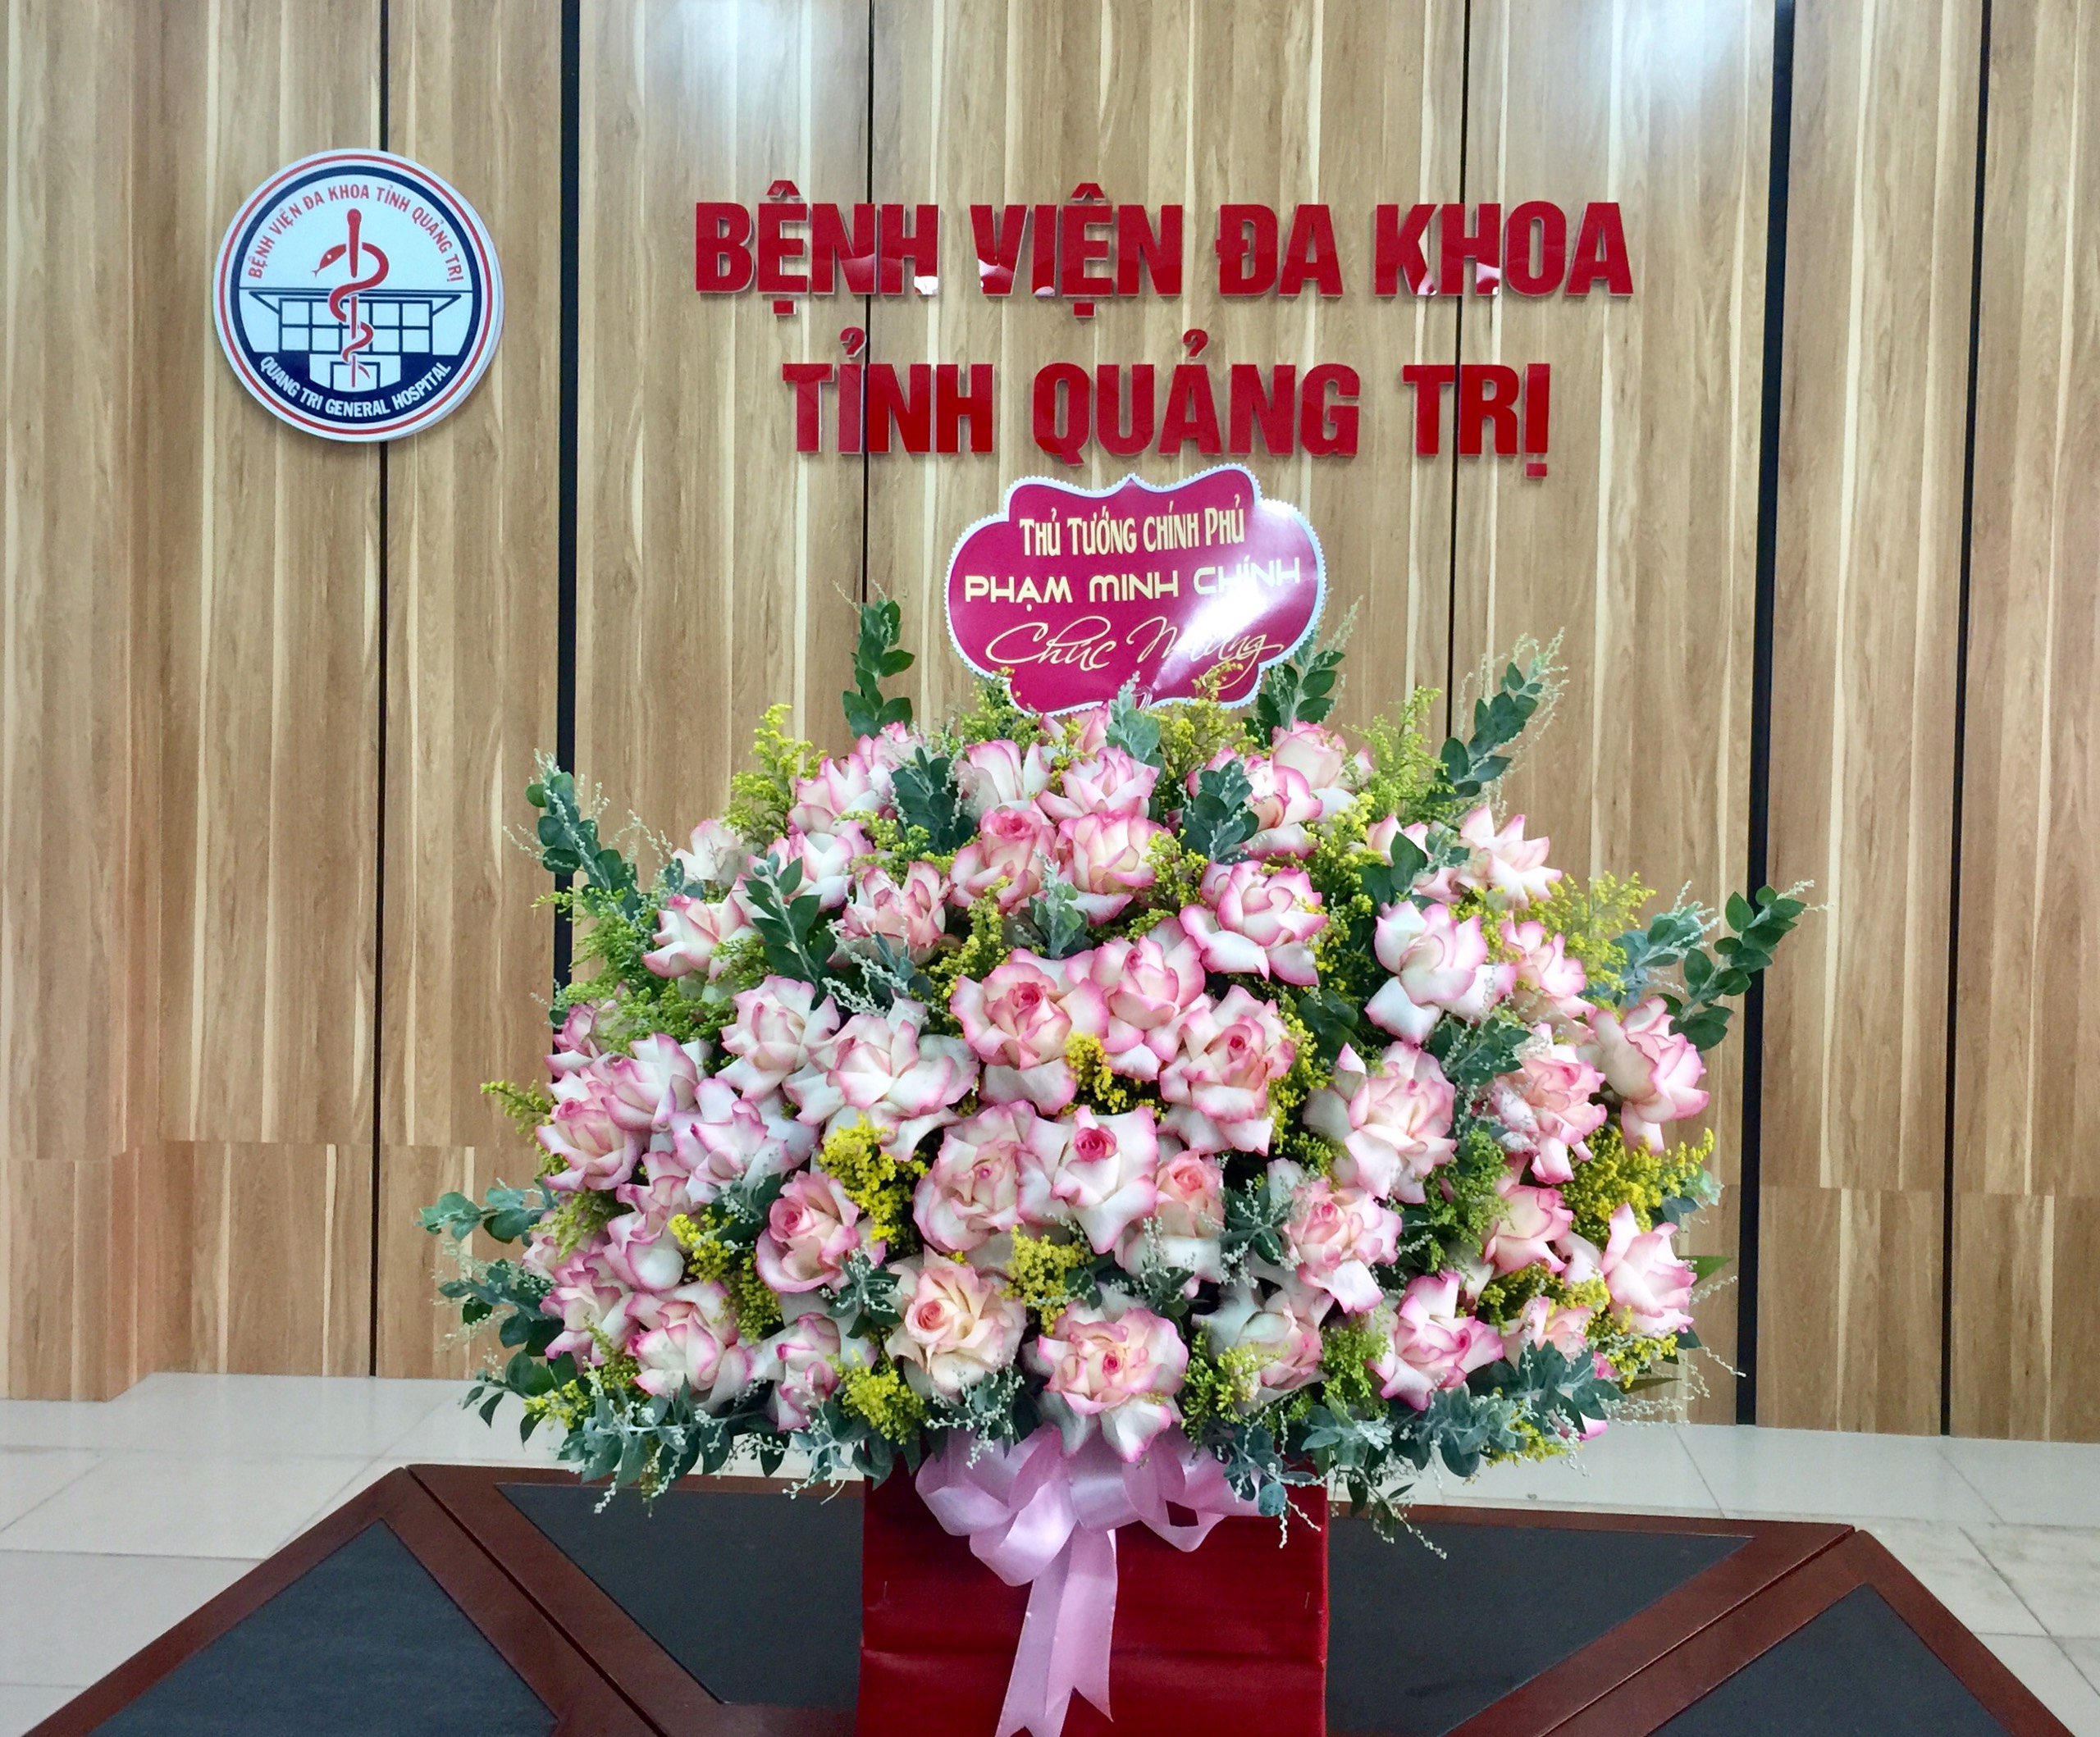 Thủ tướng chính phủ tặng hoa chúc mừng bệnh viện Đa Khoa tỉnh Quảng Trị nhân kỷ niệm 67 năm ngày thầy thuốc việt nam (27/2/1955 – 27/2/2022)